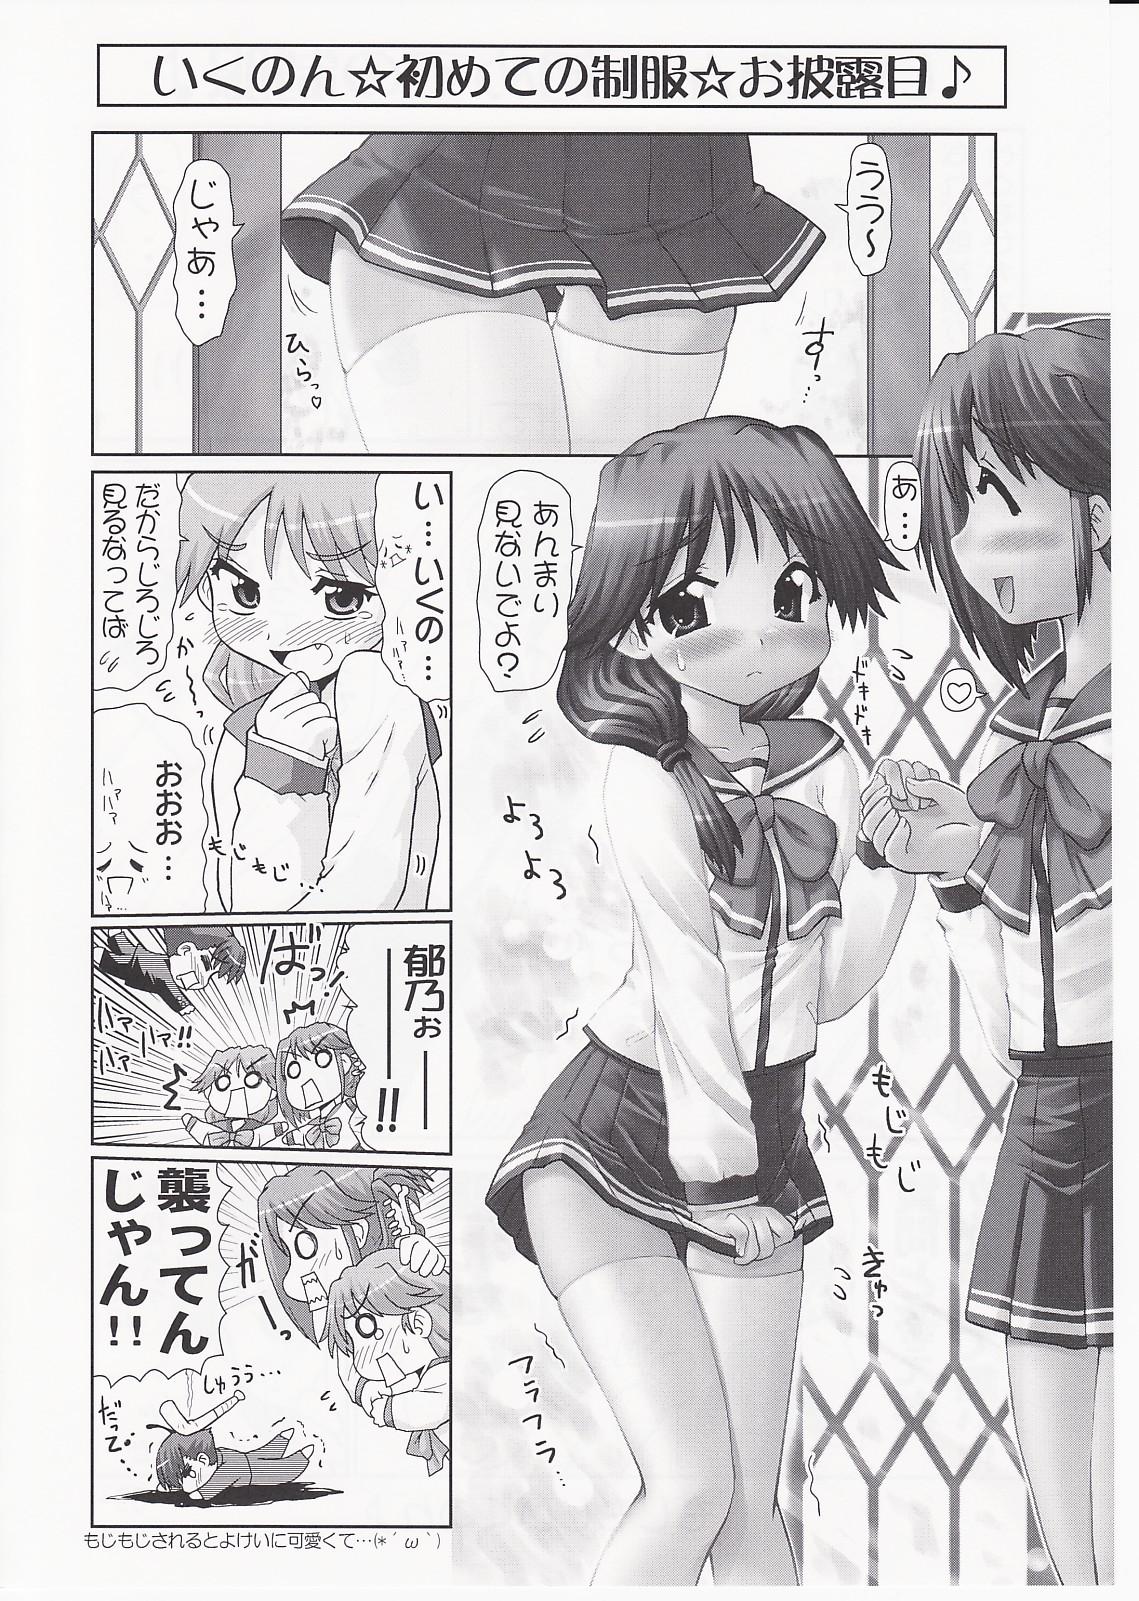 Ikunon Manga 3 8